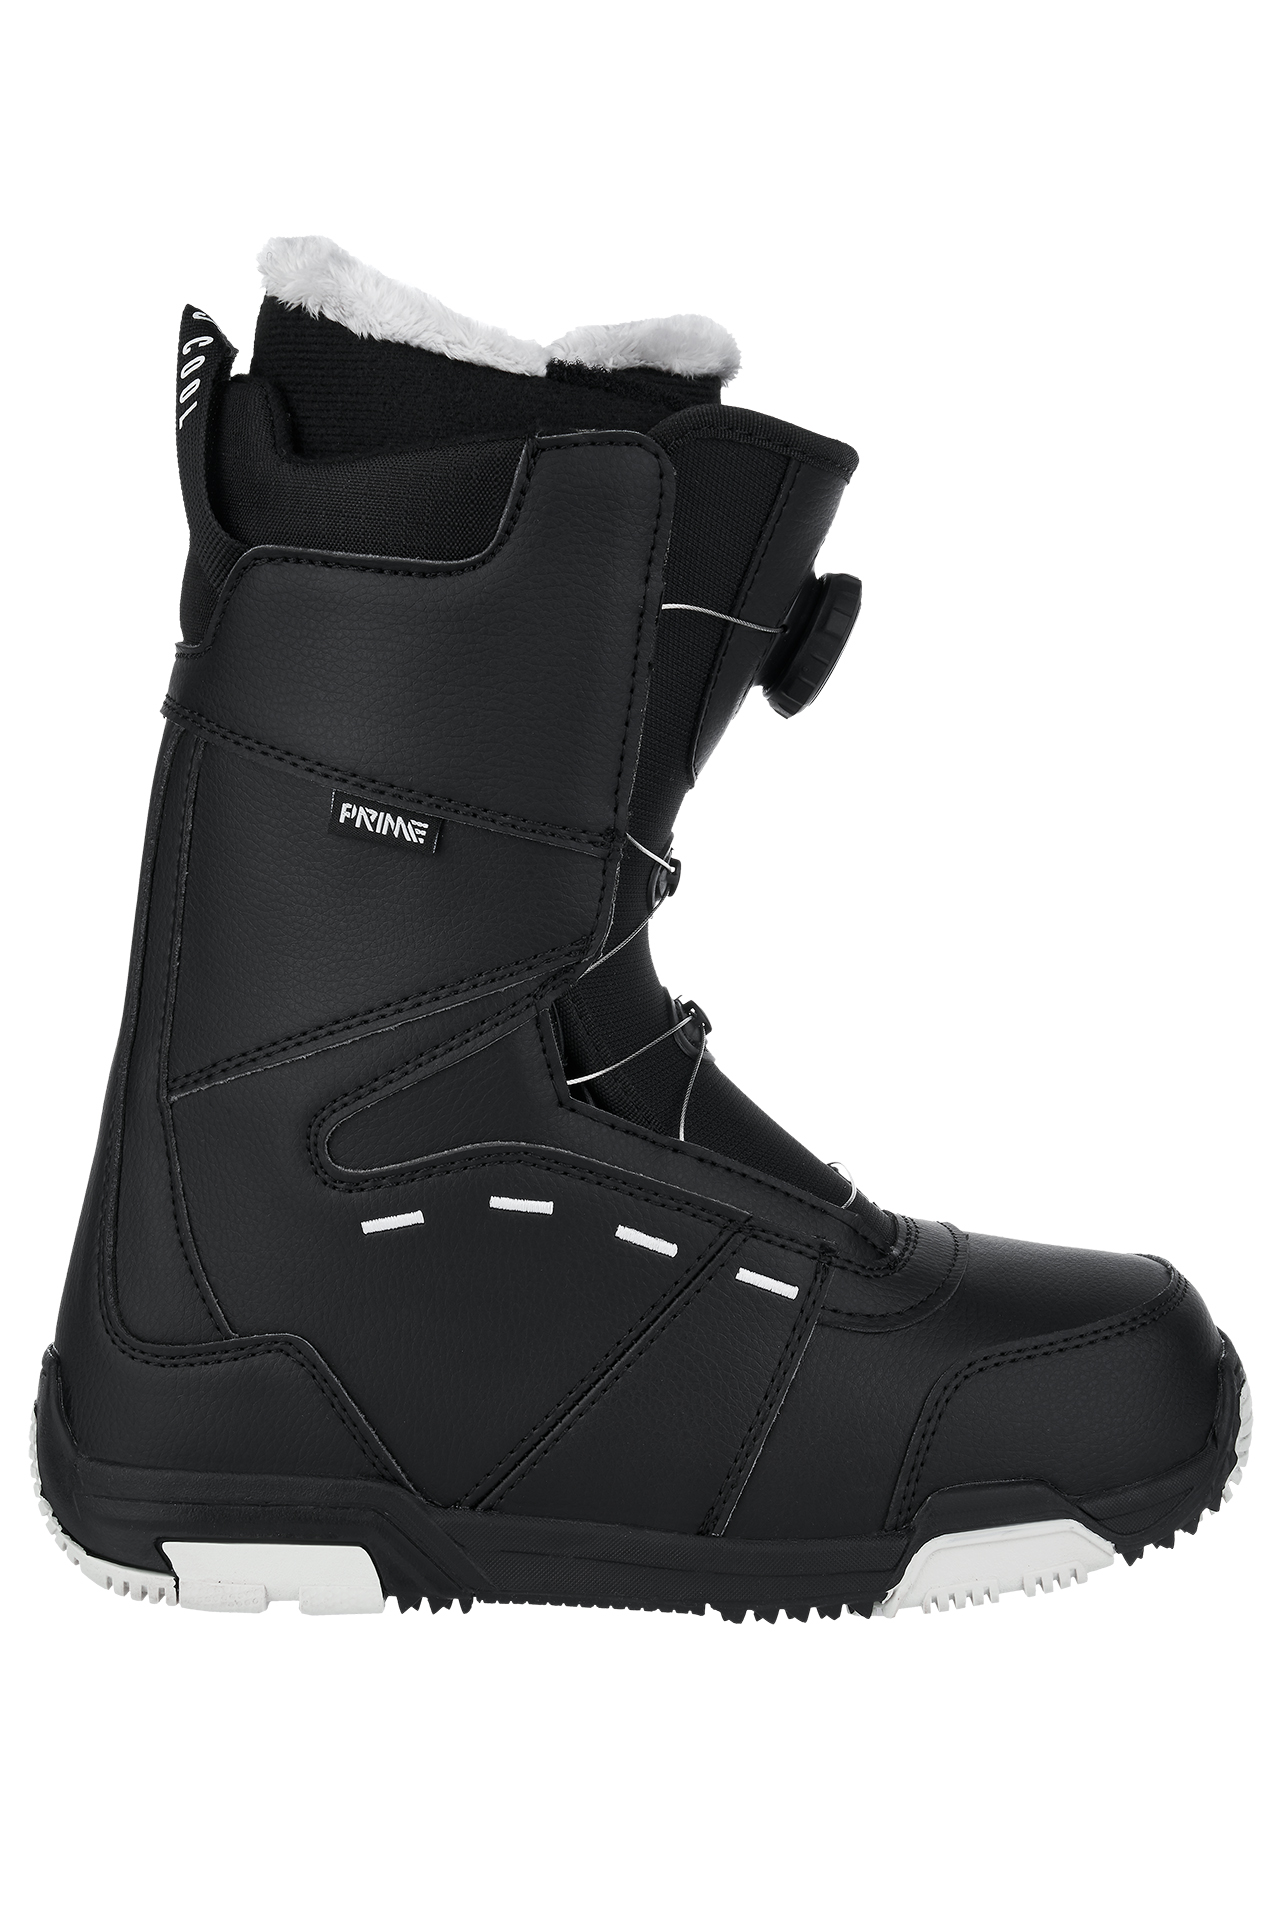 Ботинки сноубордические Prime 20-21 Cool-C1 TGF Boa Black, цвет черный, размер 40,0 EUR 02613 - фото 2